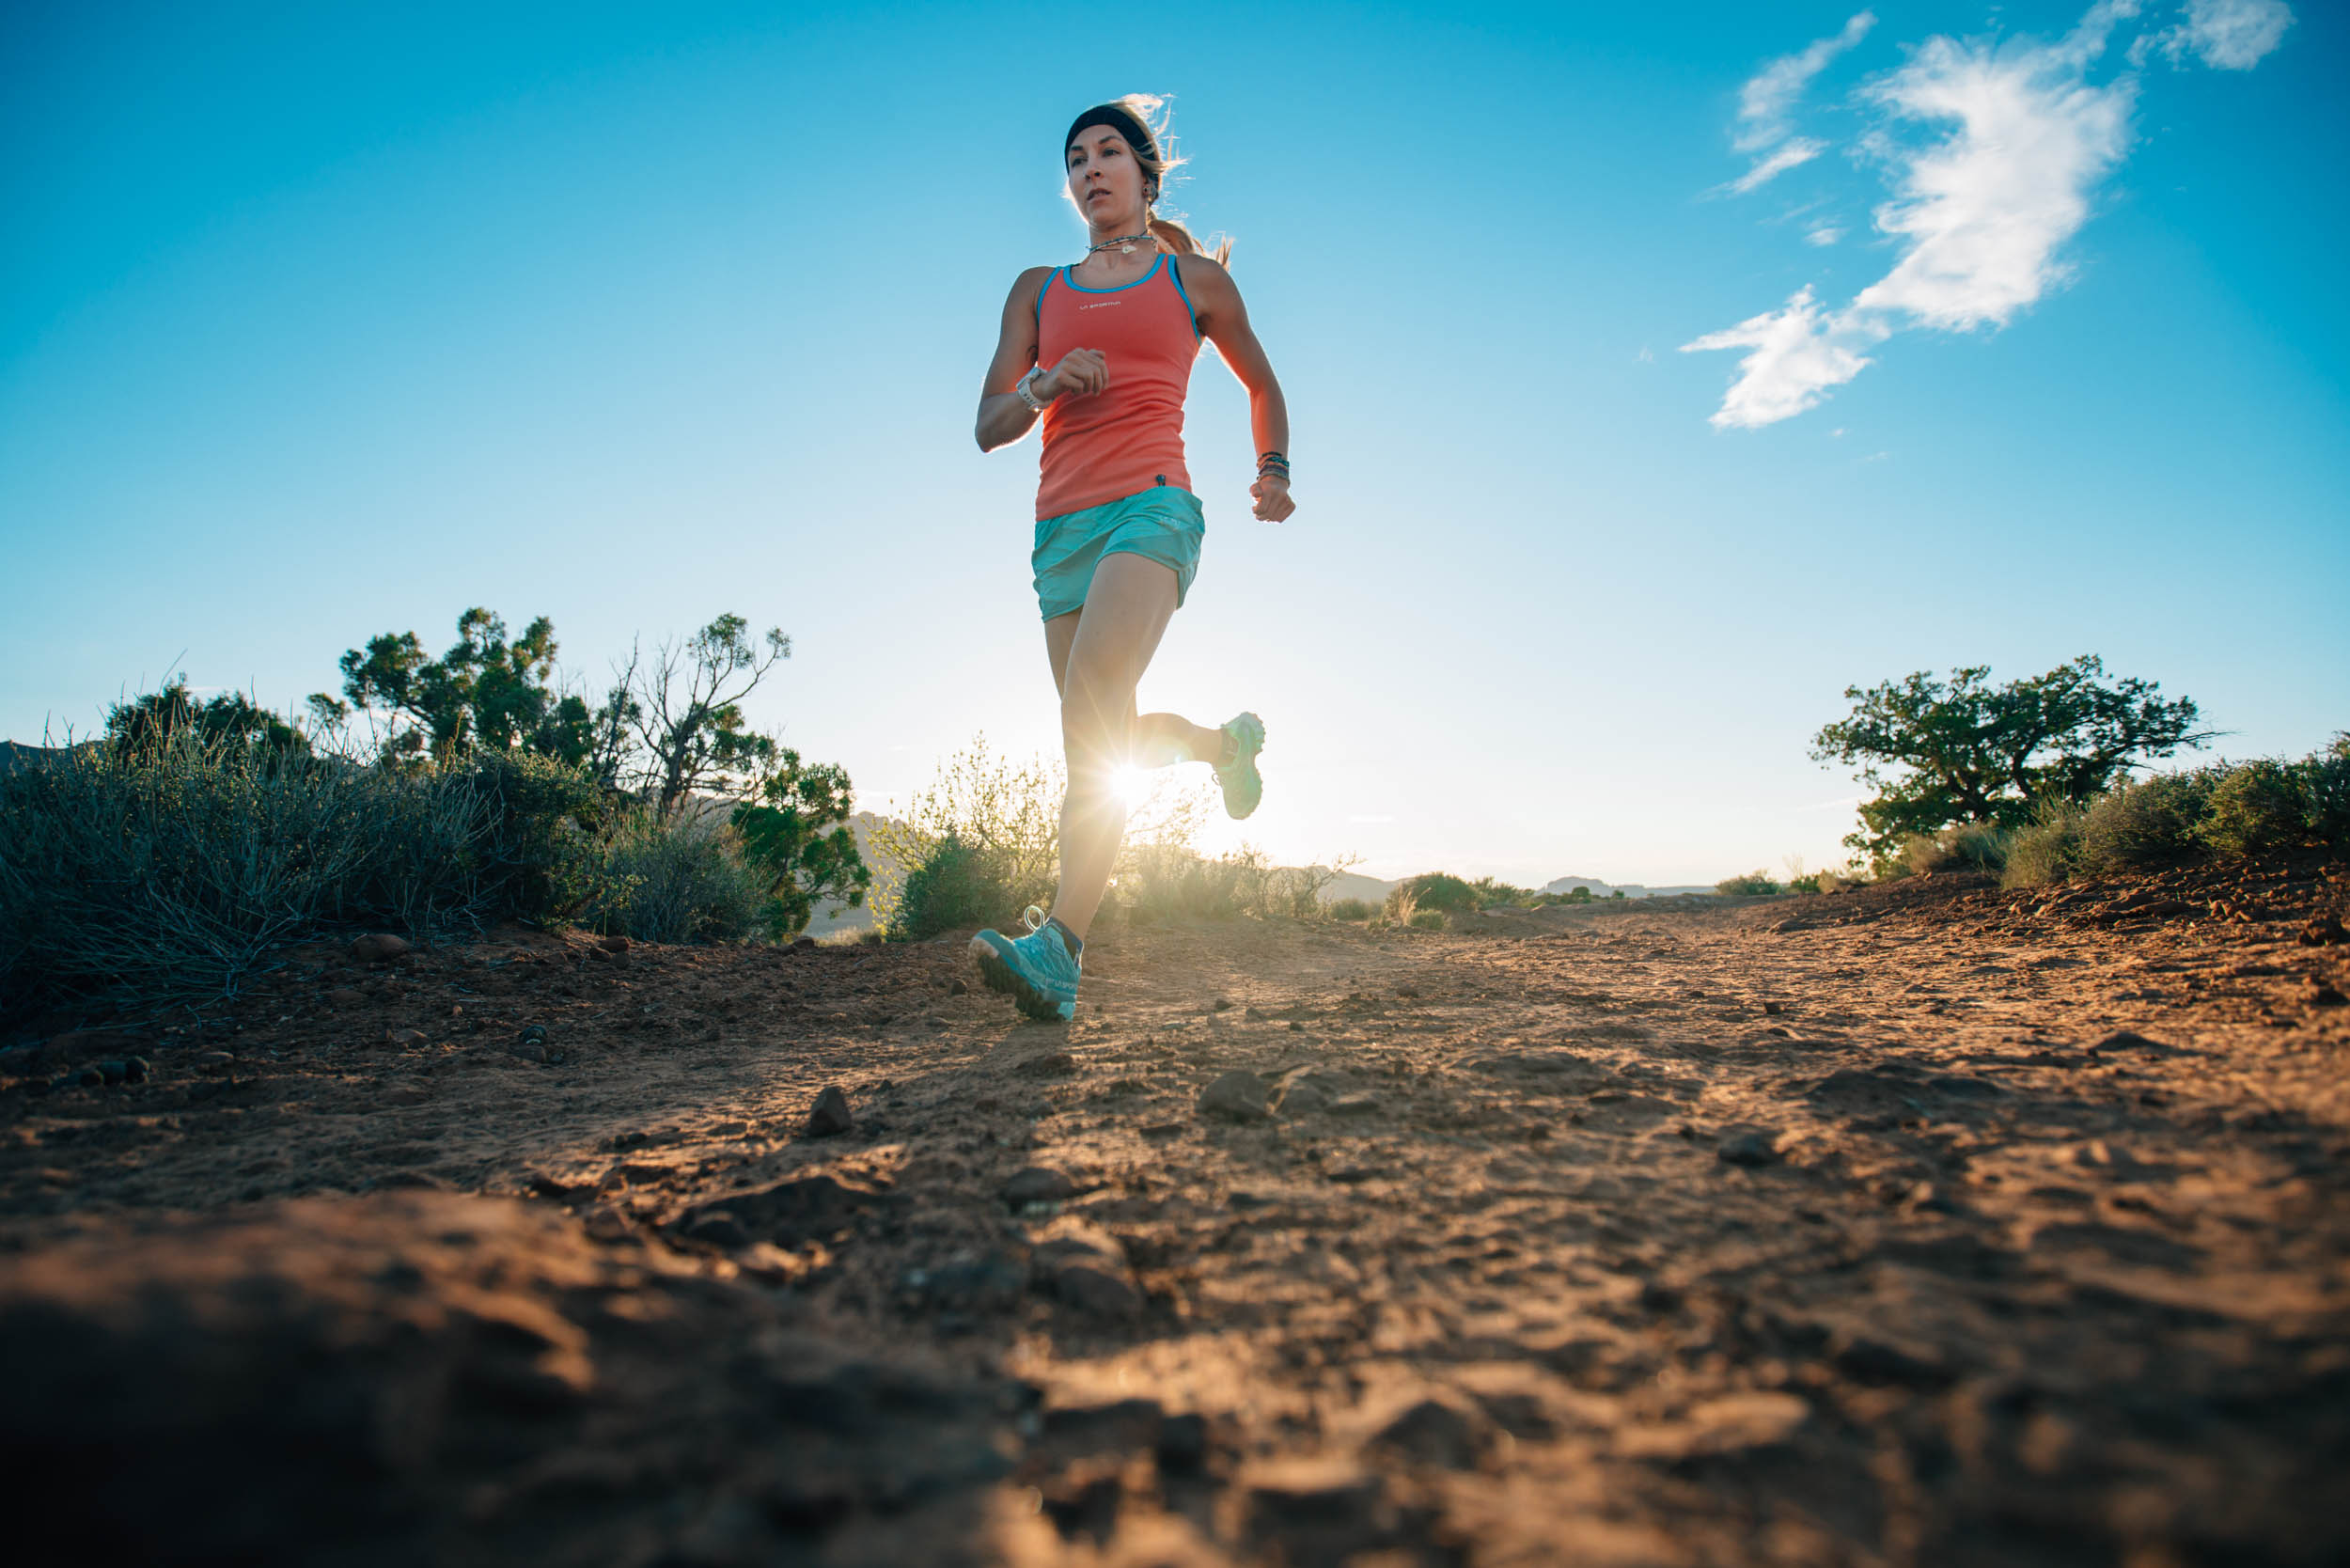 Kelly Halpin shares her adventure running in Death Valley